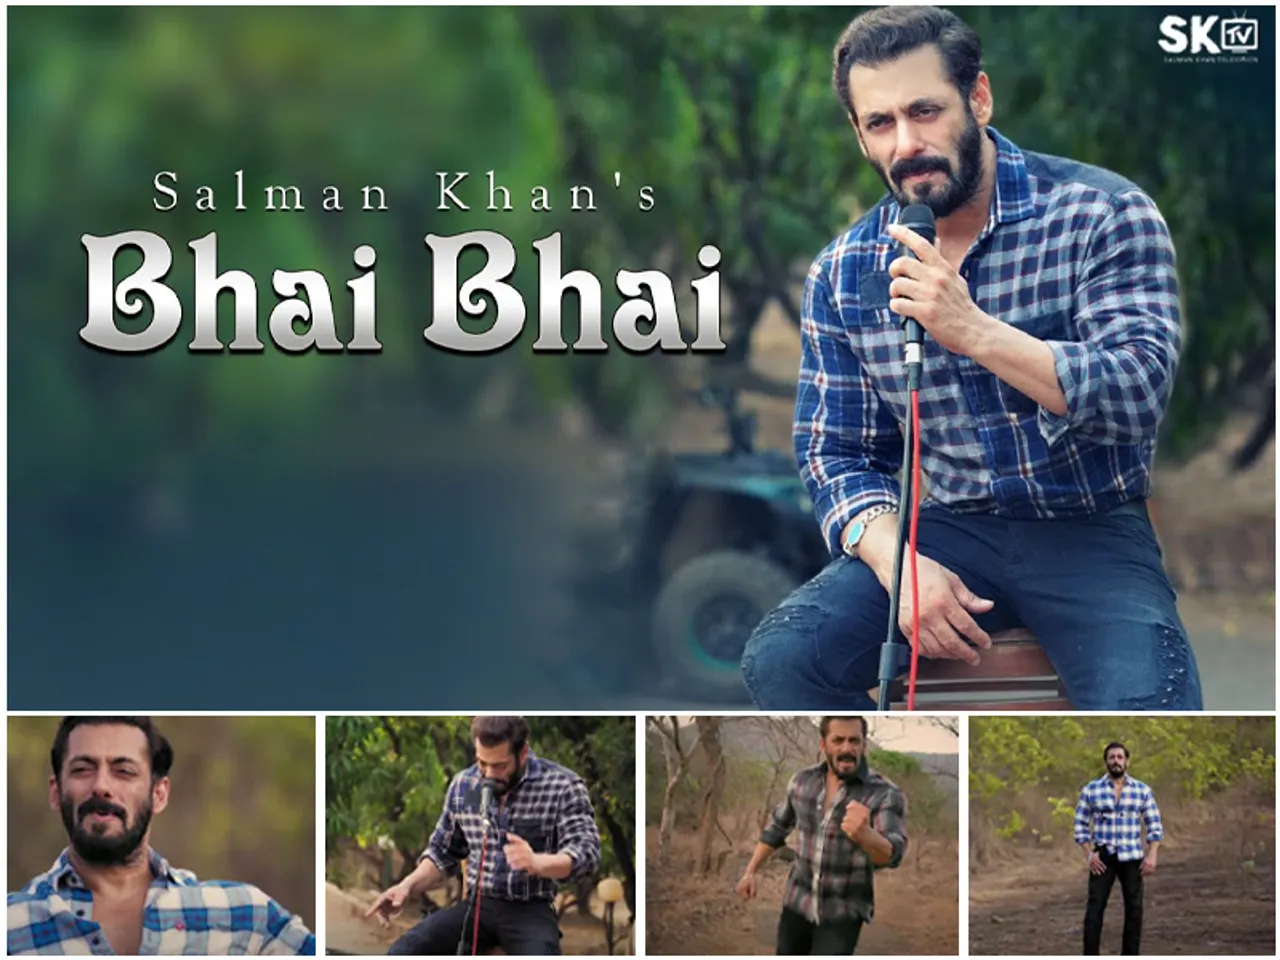 ईद पर सलमान खान ने फैन्स को दिया सरप्राइज़, फिल्म की जगह फैंस के लिए रिलीज किया 'Bhai Bhai' सॉन्ग